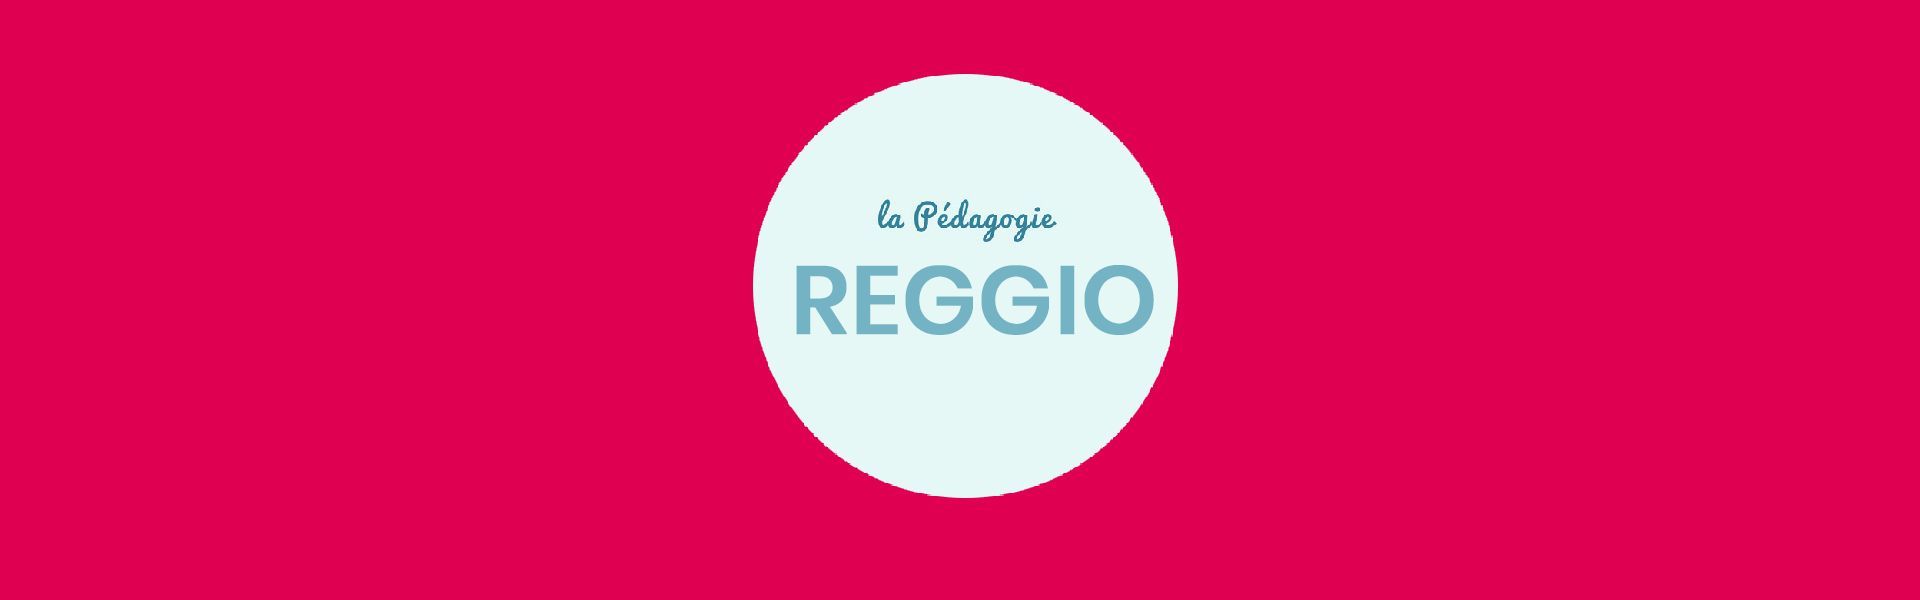 Pédagogies alternatives, Pédagogie Reggio | Everykid